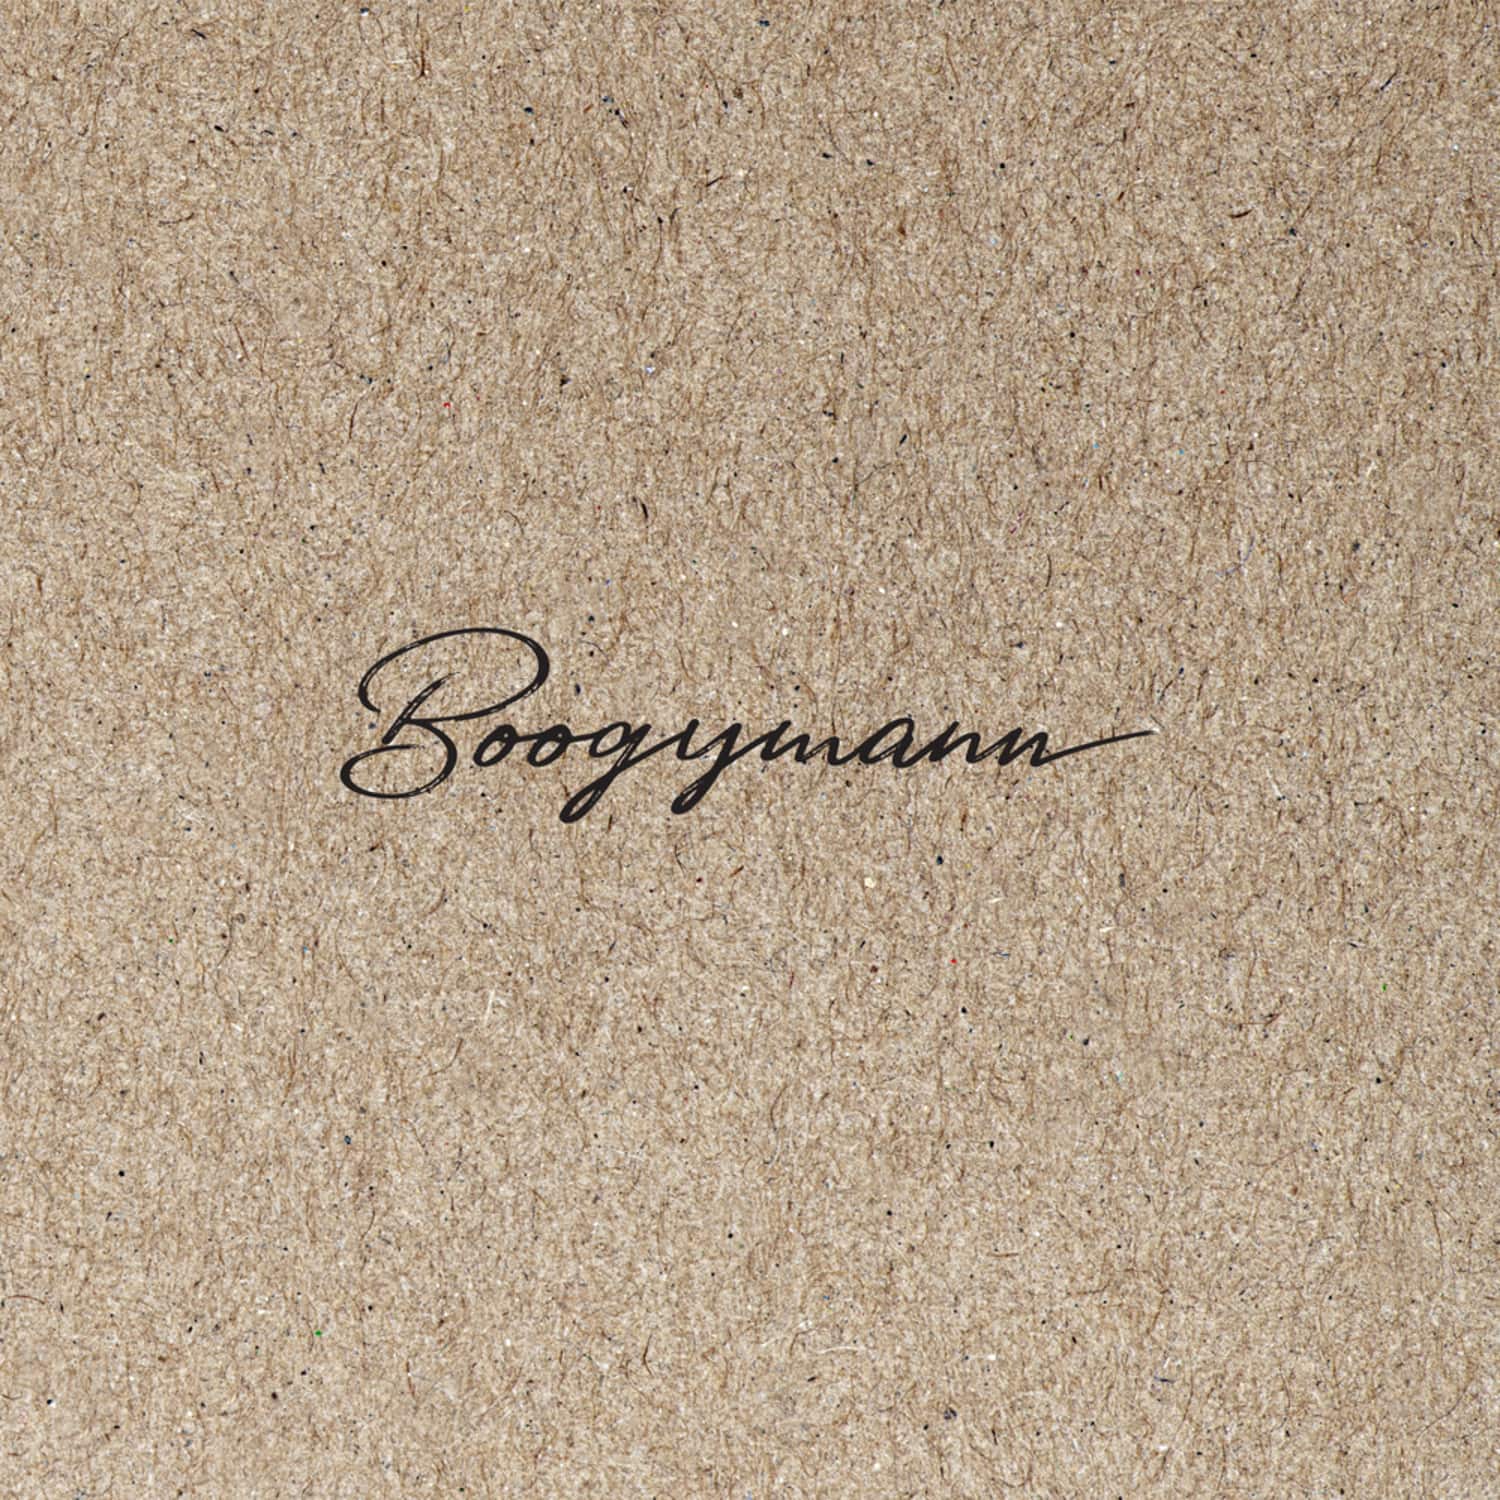 Boogymann - BOOGYMANN LP